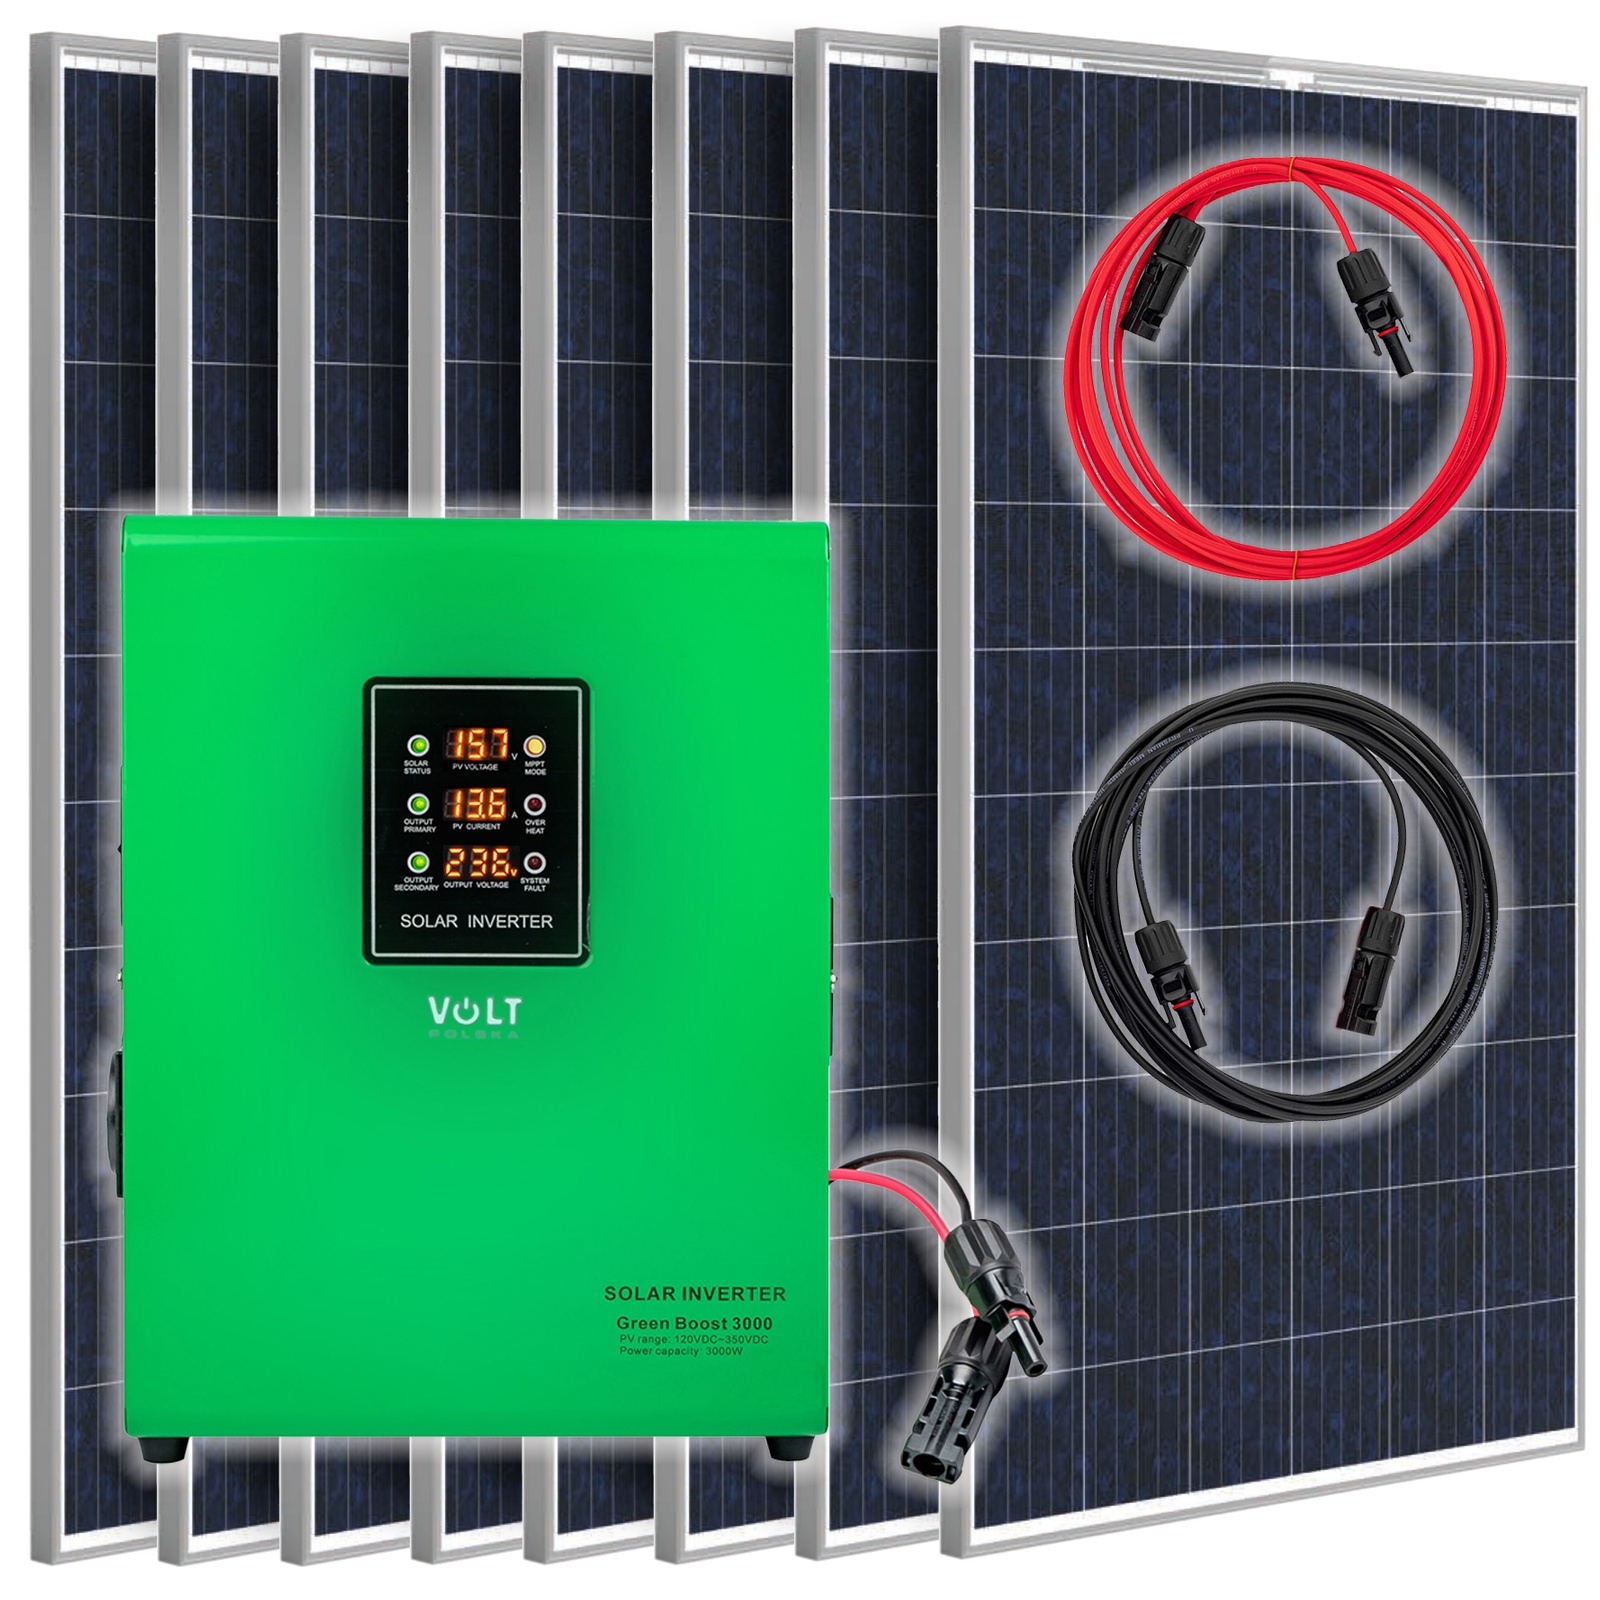 Image of Zestaw solarny fotowoltaiczny do grzania wody (8x Panel solarny, Przetwornica GREEN BOOST) VOLT POLSKA